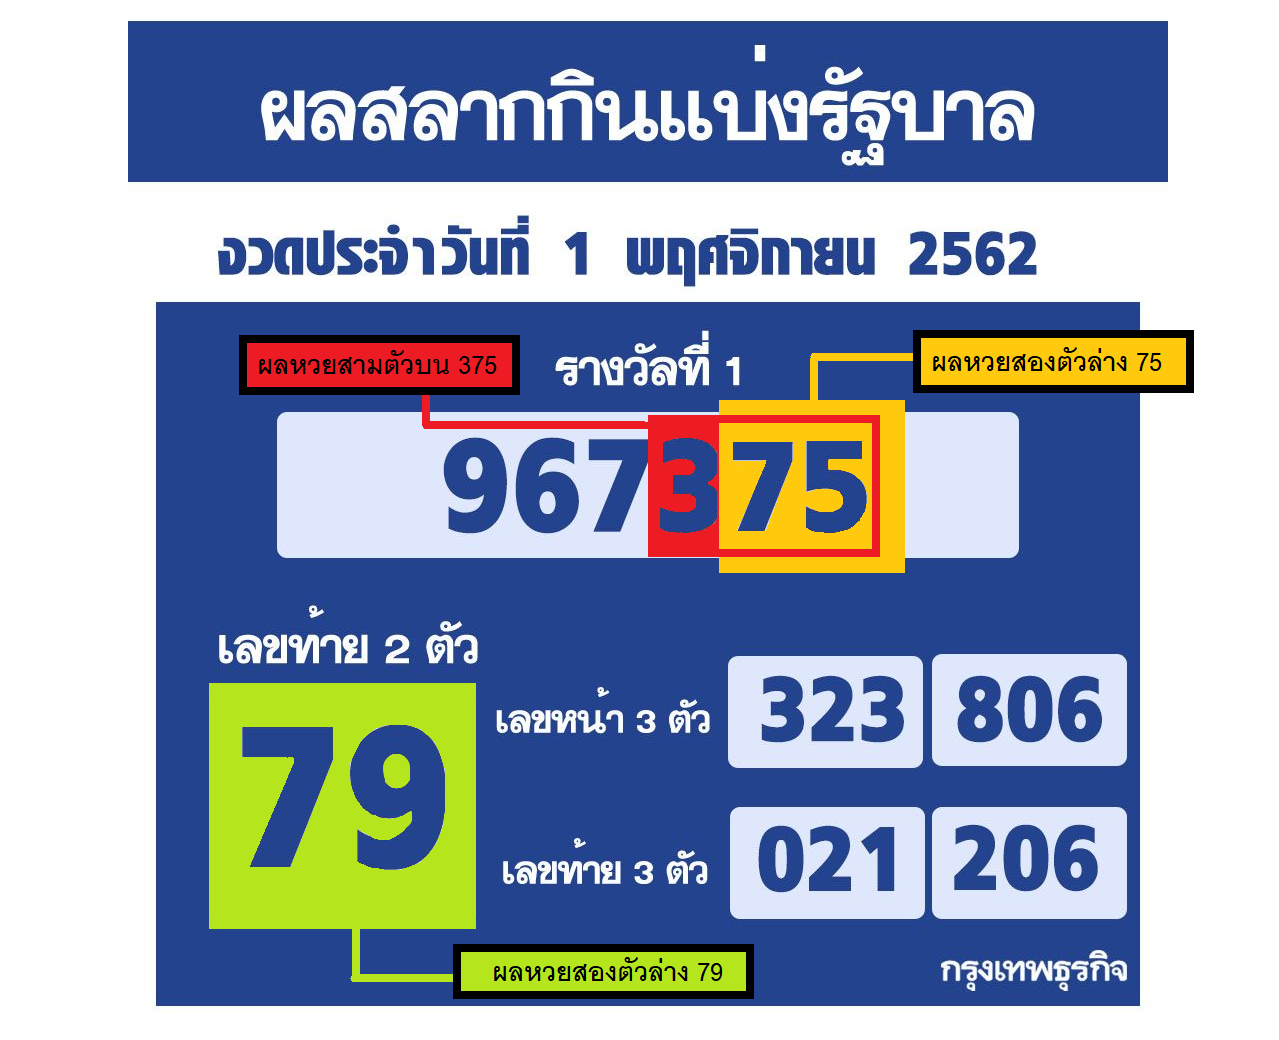 วิธีการดูผลรางวัลใต้ดินของหวยรัฐบาลไทย - หวยรัฐบาลไทย